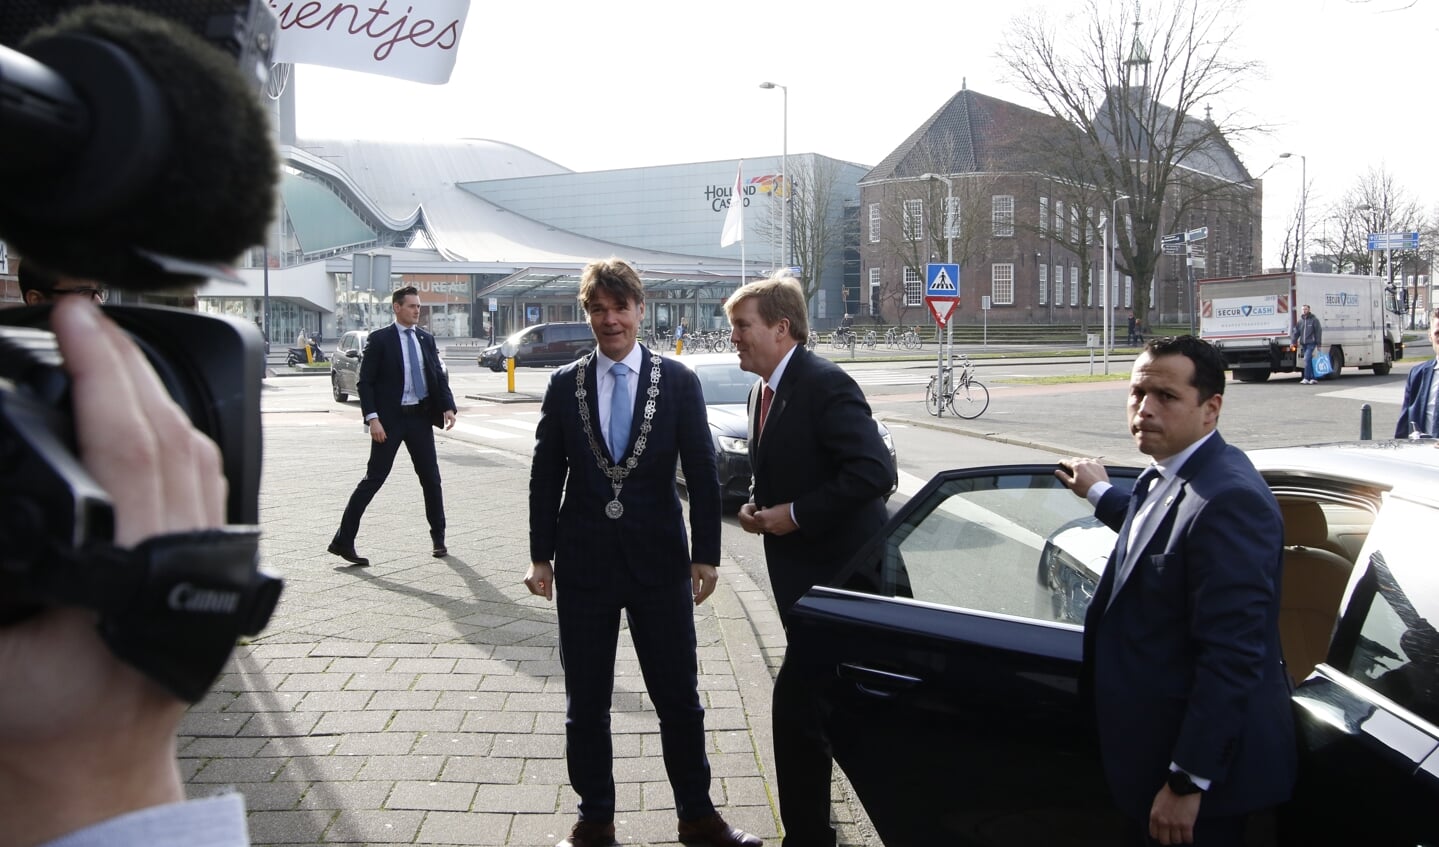 Werkbezoek Koning Willem-Alexander aan coöperatie de Vrije Uitloop in Breda. In het pand van Tientjes spreekt hij scharrelondernemers.